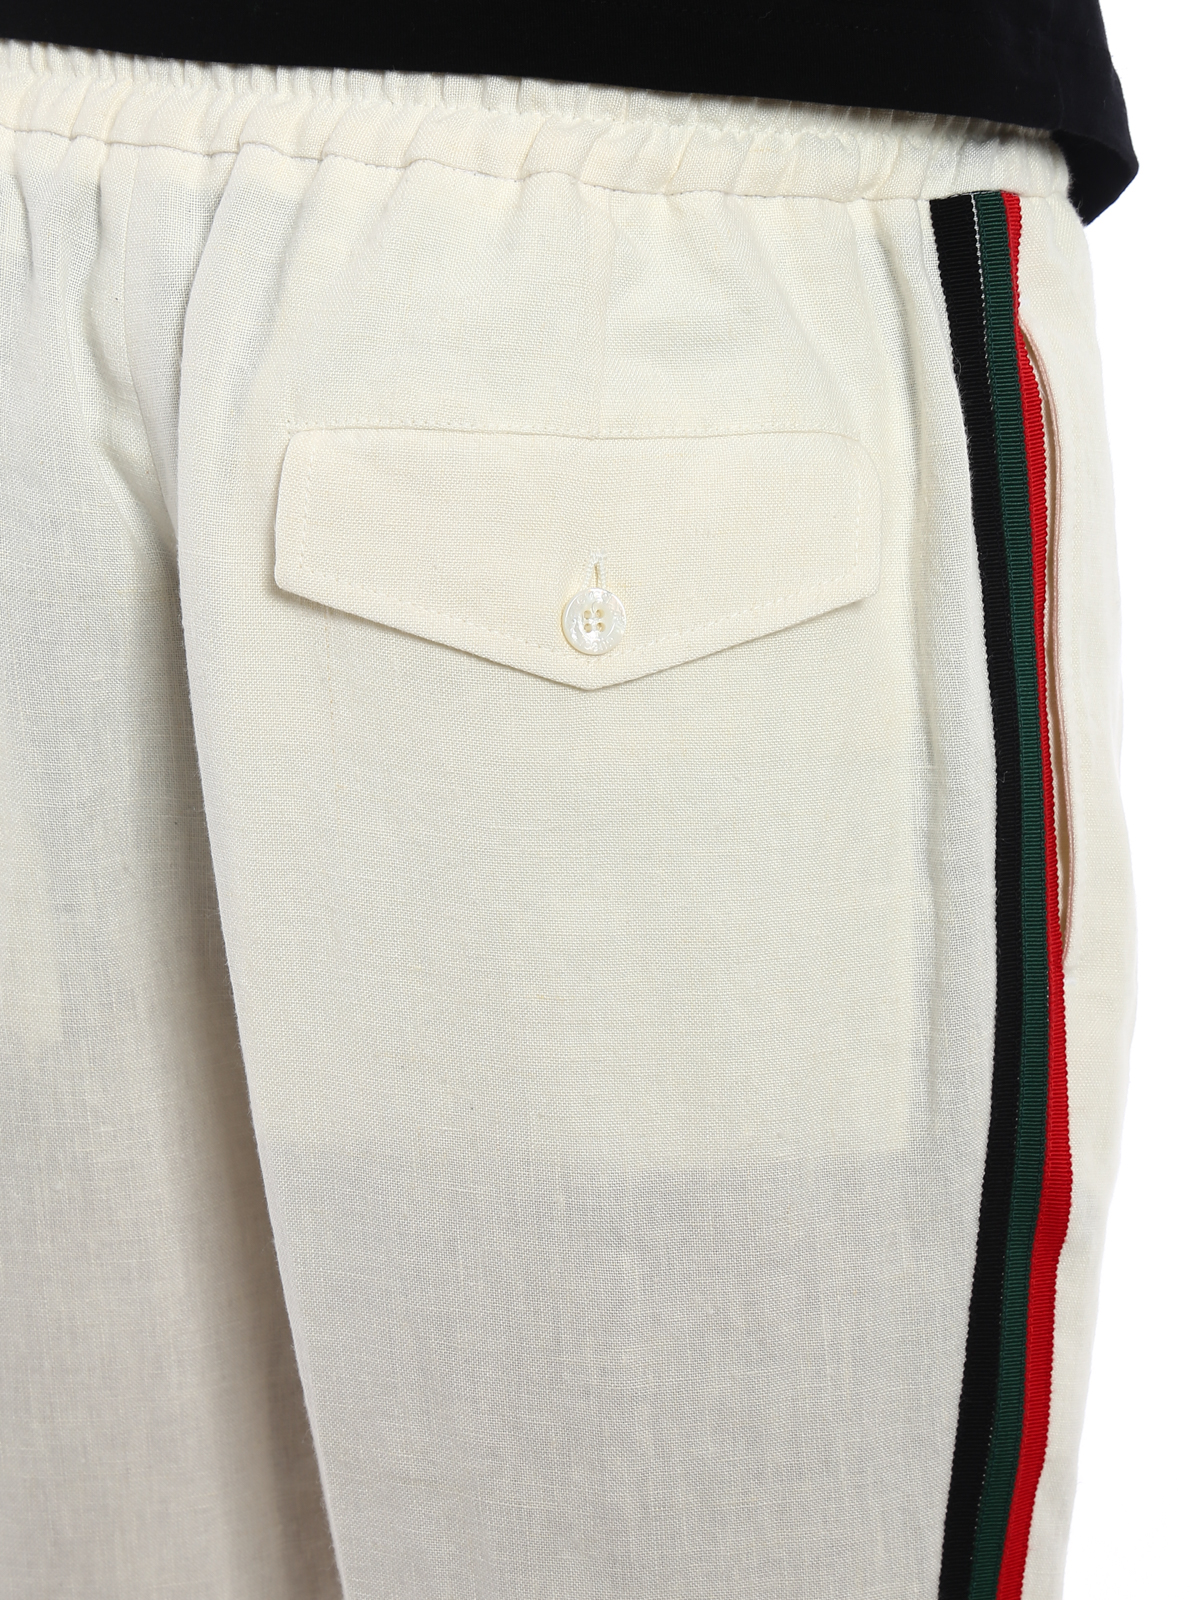 Pantalones casual Gucci - Pantalón Casual - - 519574Z374G9985